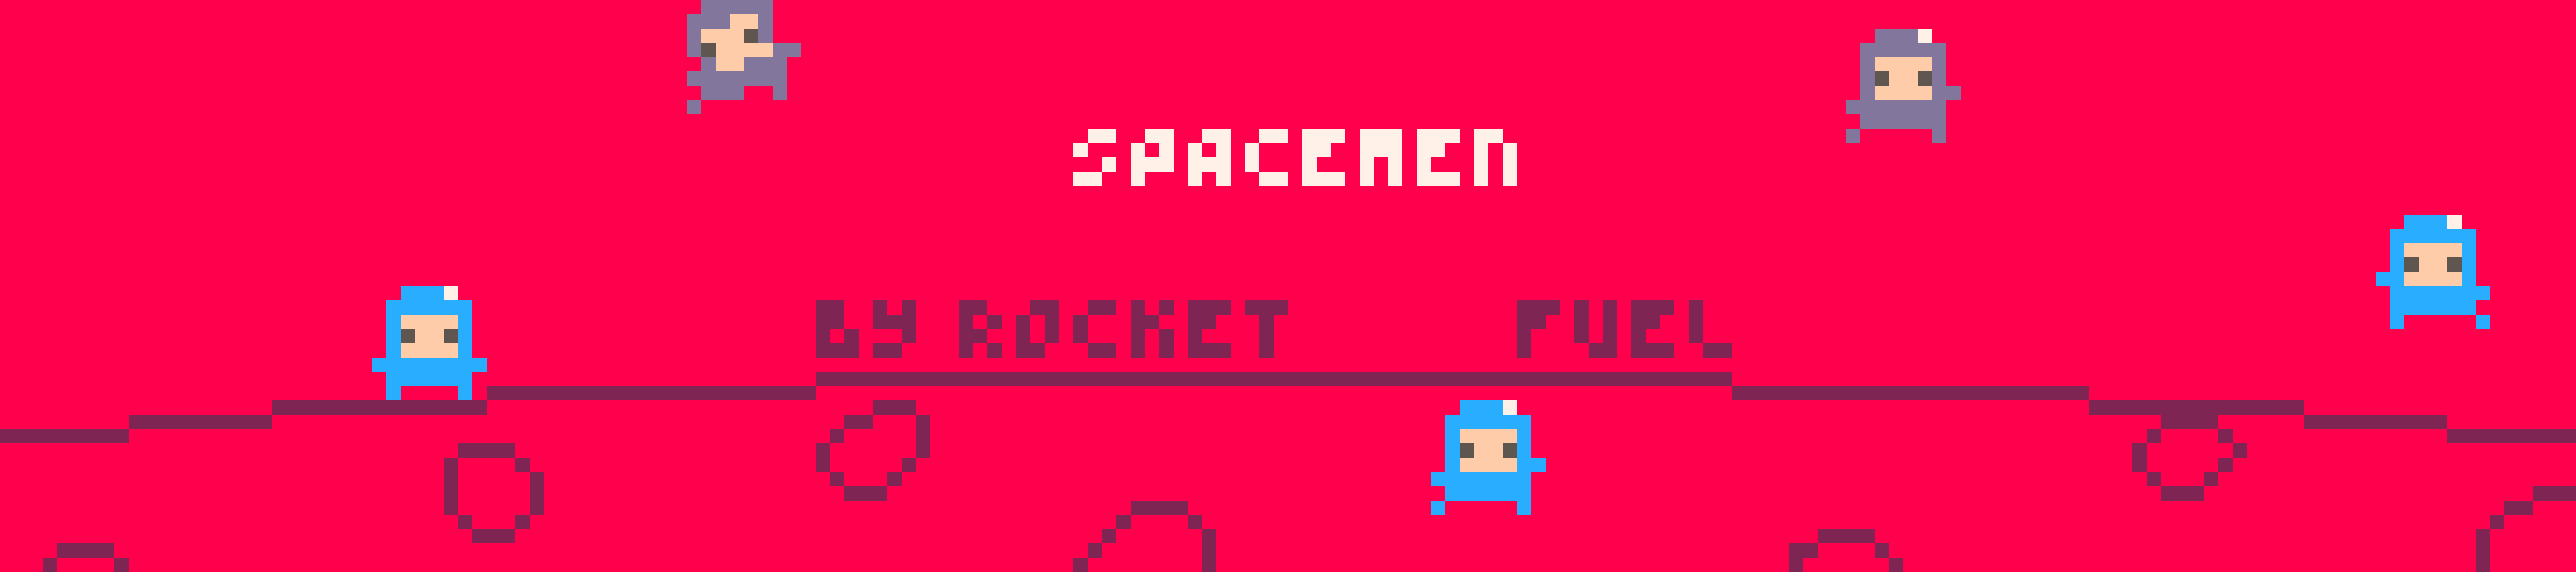 spacemen™